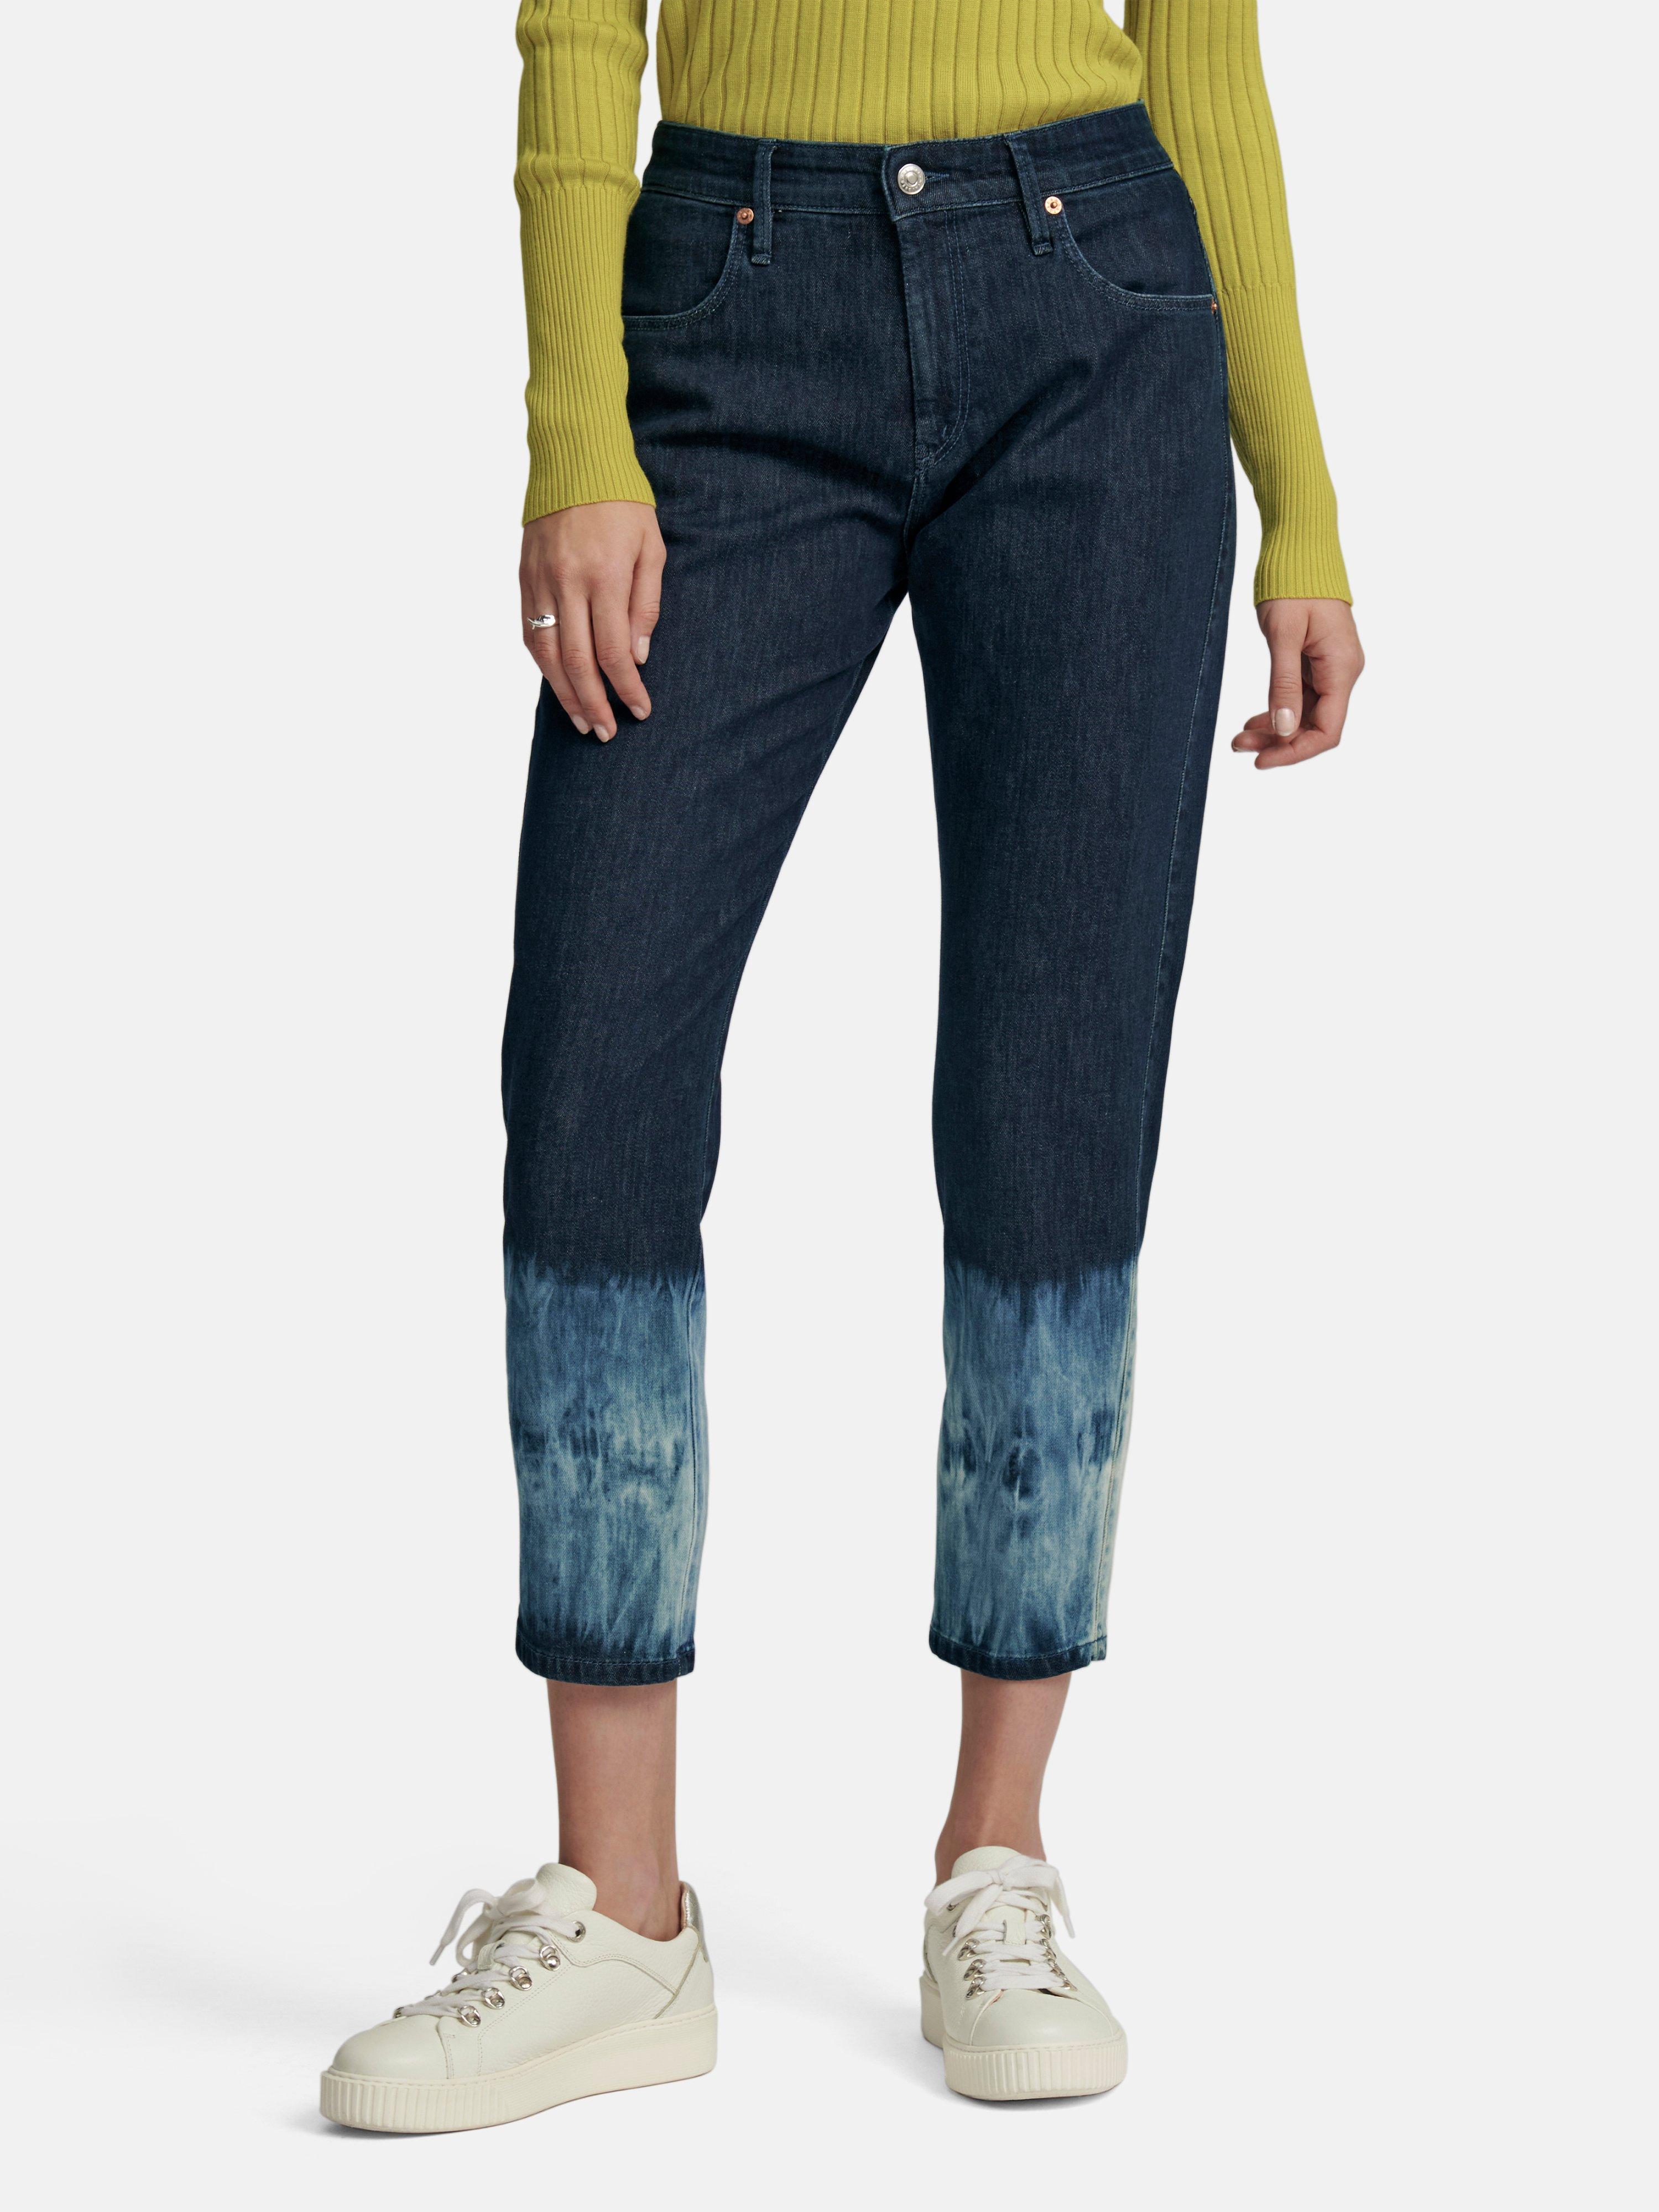 MAC DAYDREAM - Knöchellange Jeans Modell Lounge - Dark blue denim